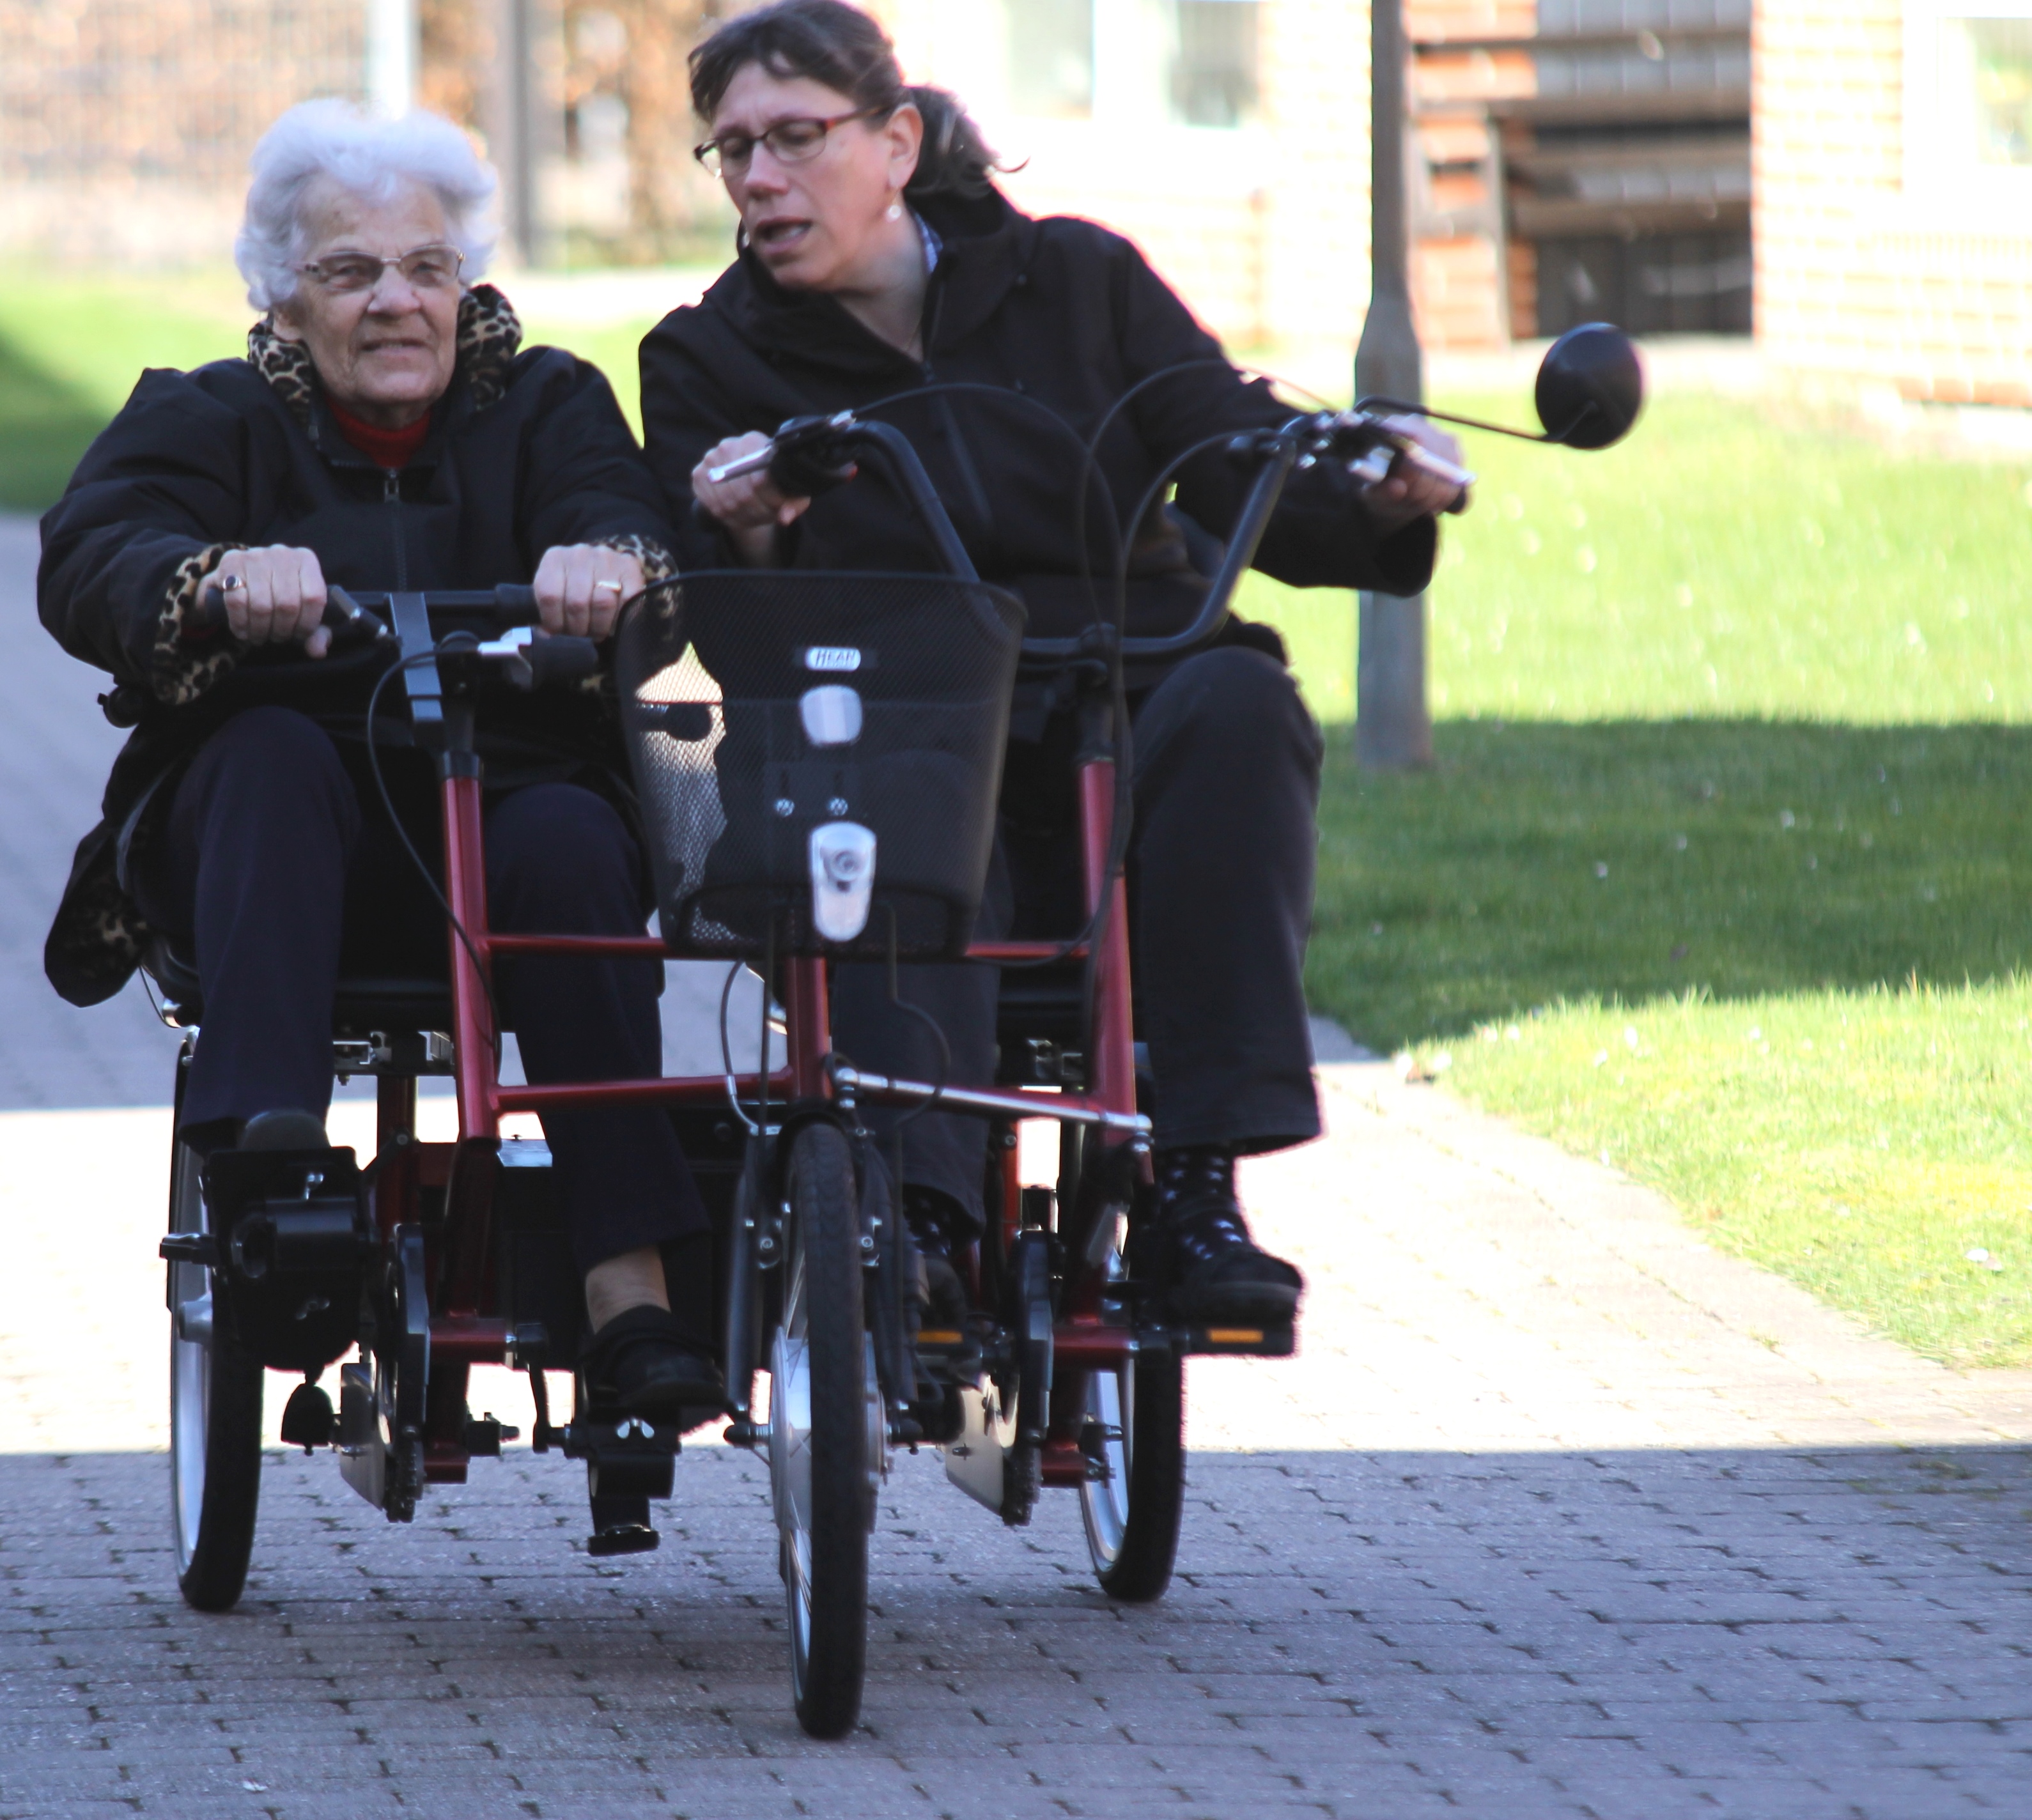 Cykelarrangement fokus på motion for ældre | SønderborgNYT